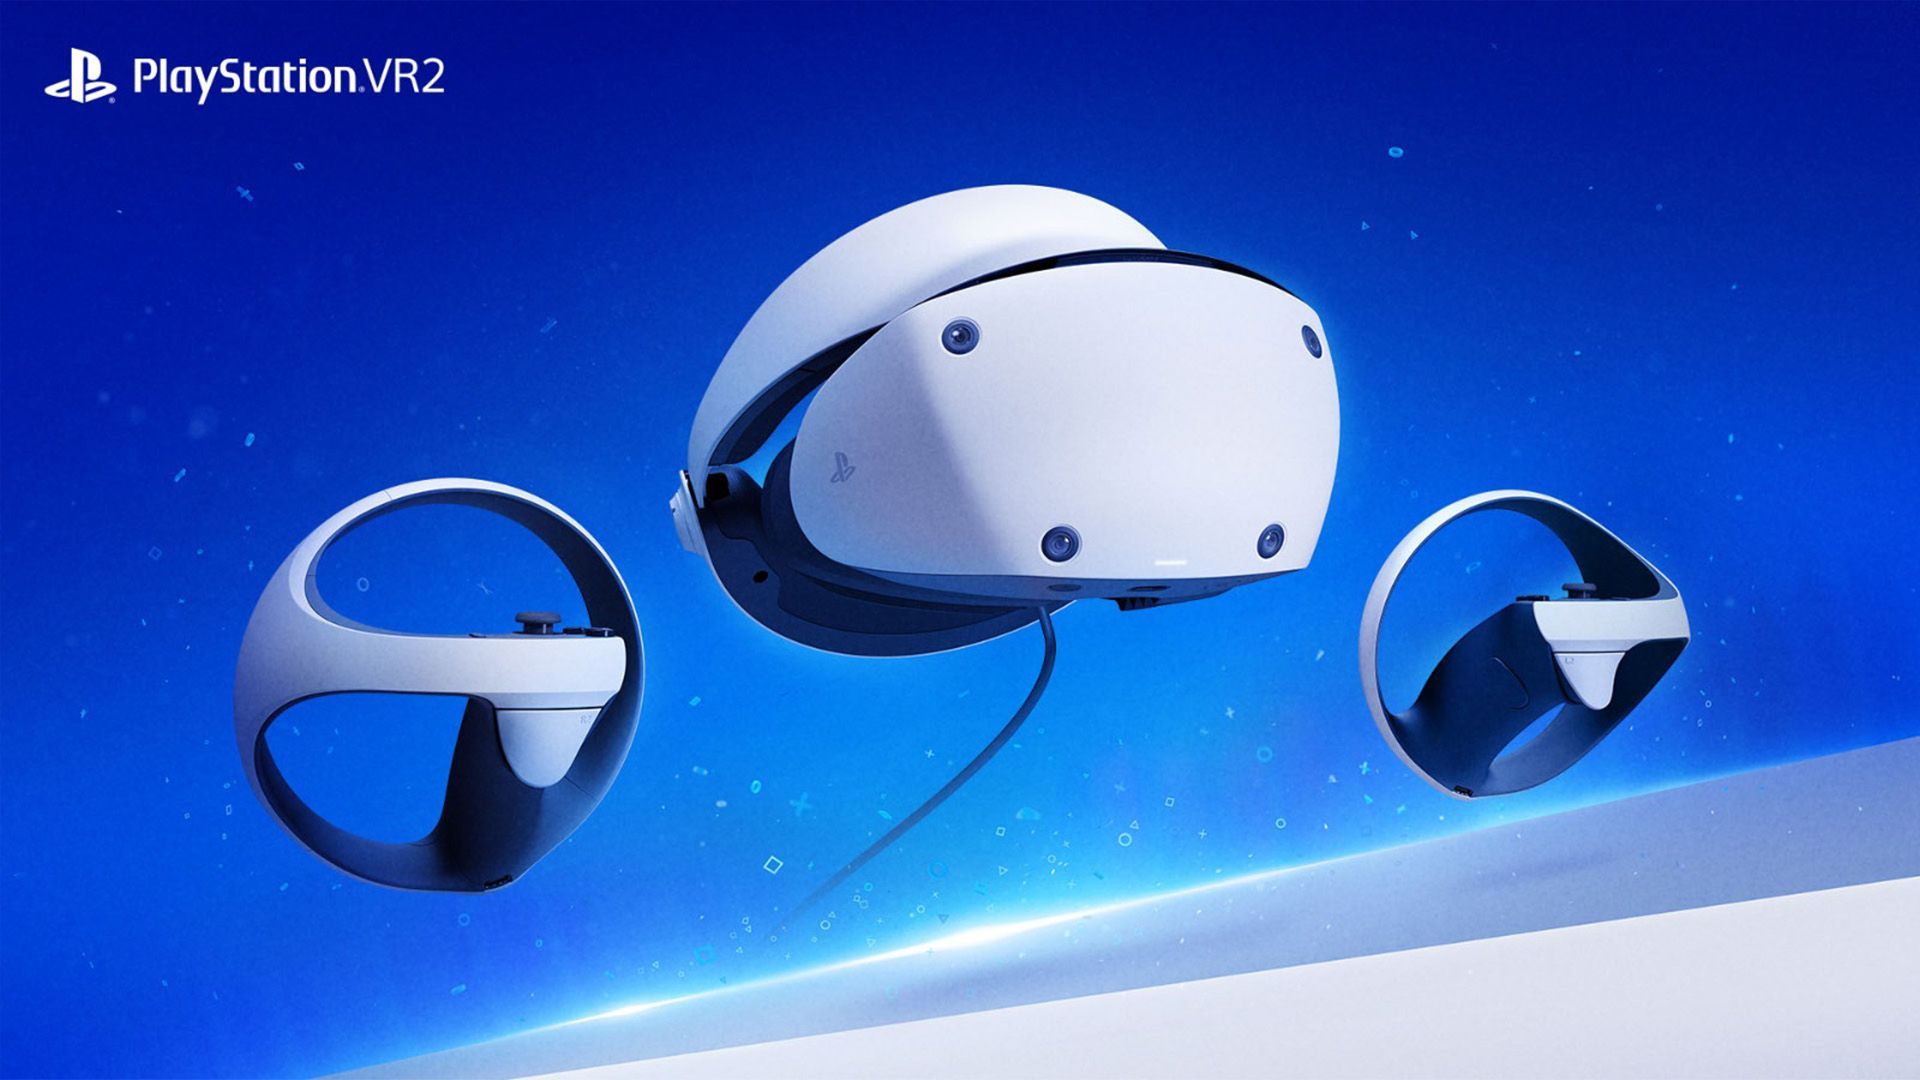 Le PlayStation VR 2 de Sony enregistrerait des ventes inférieures aux attentes lors de son lancement